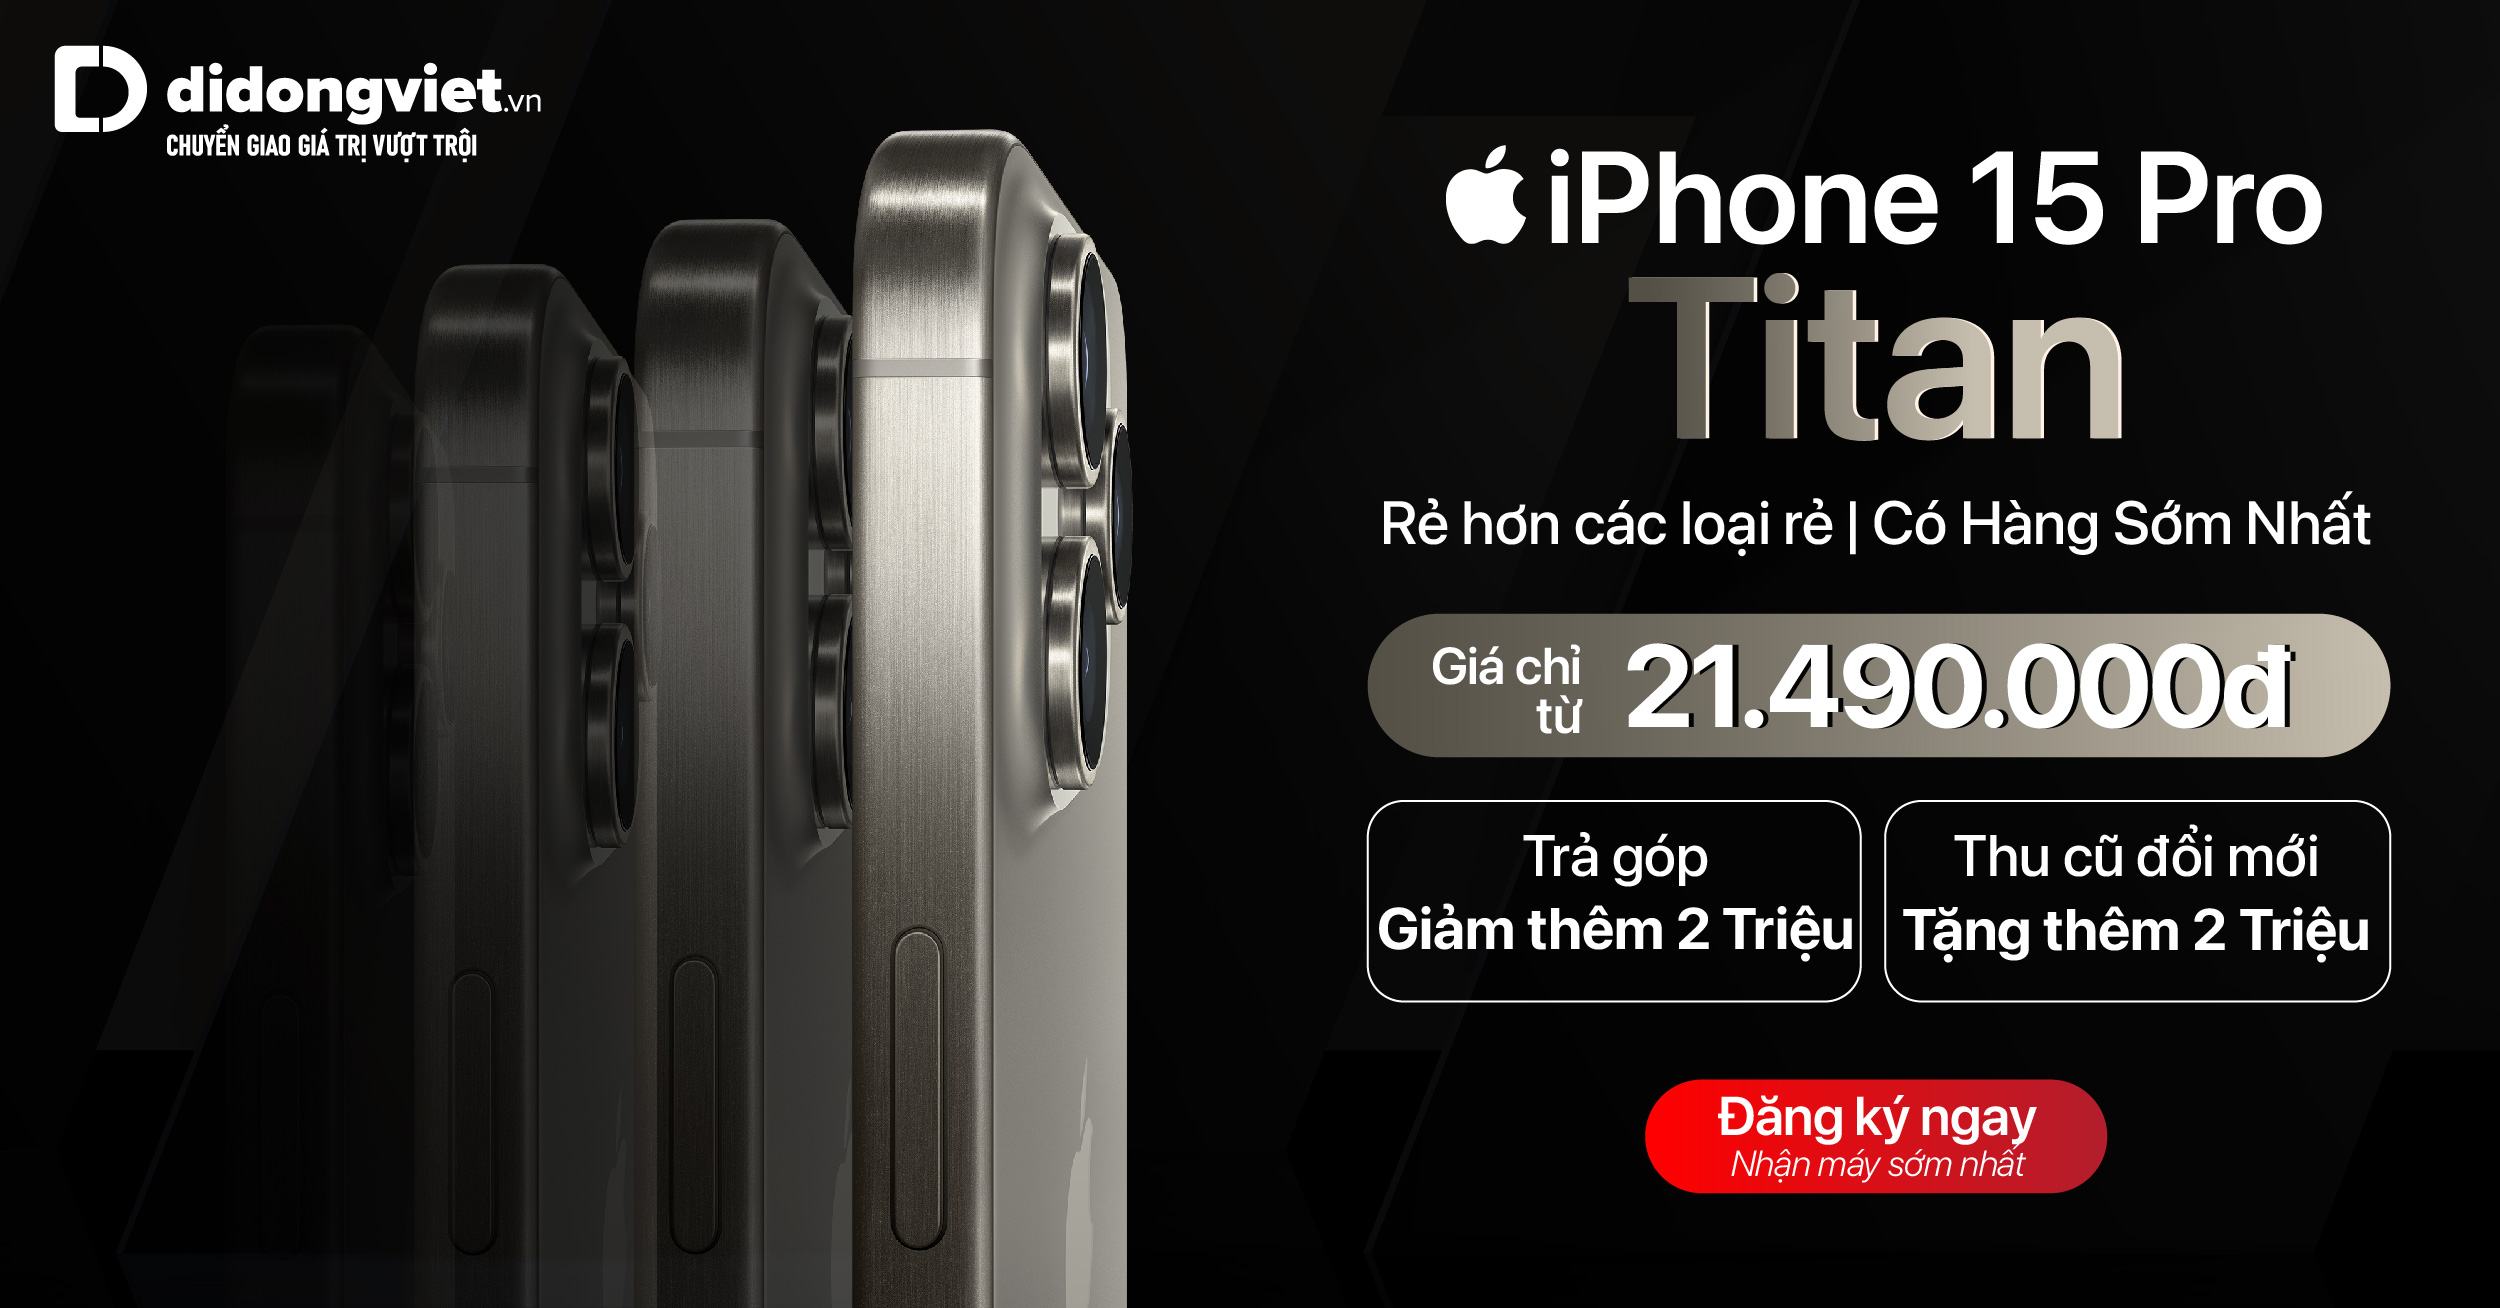 Đăng ký nhận thông tin siêu phẩm iPhone 15 series – Giá chỉ từ 21.490.000đ